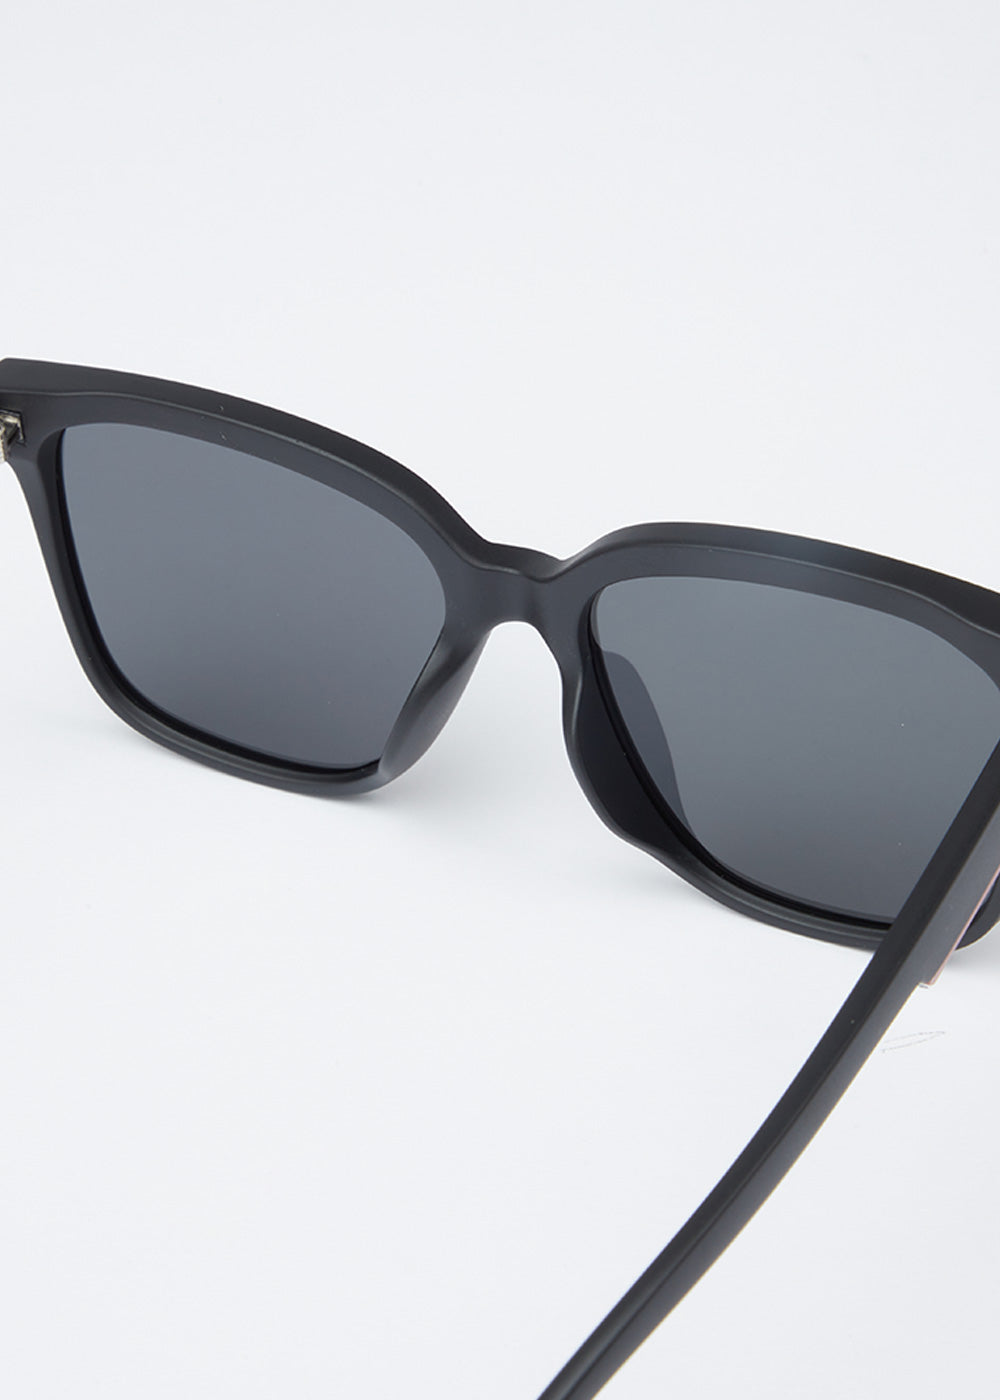 Devine Black Unisex Square Sunglasses